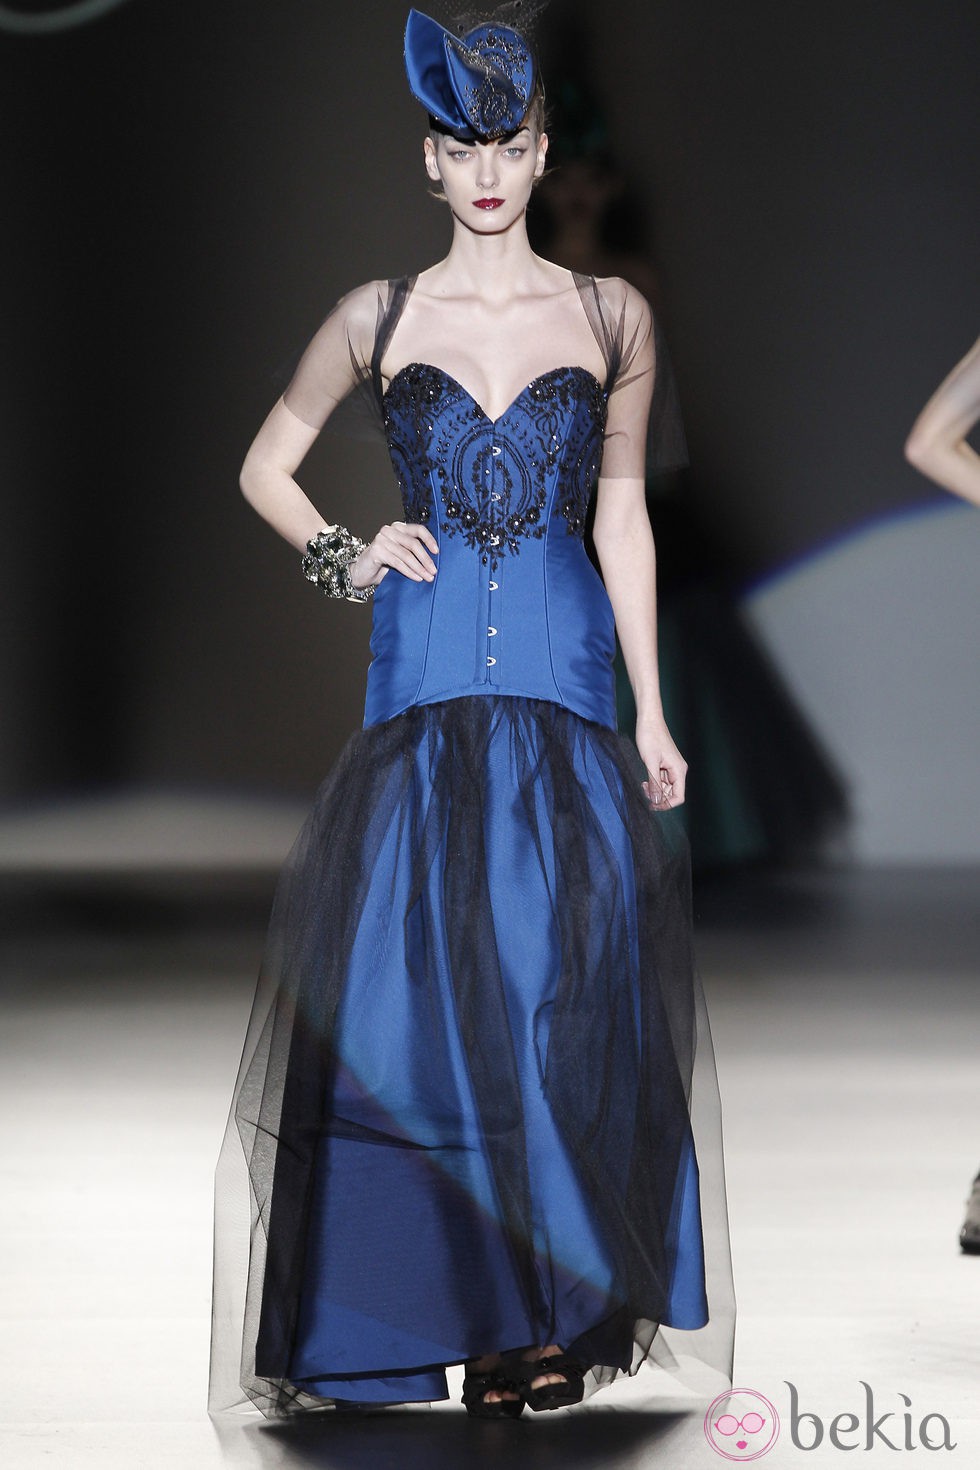 Corsé azul con encaje de Maya Hansen en Madrid Fashion Week